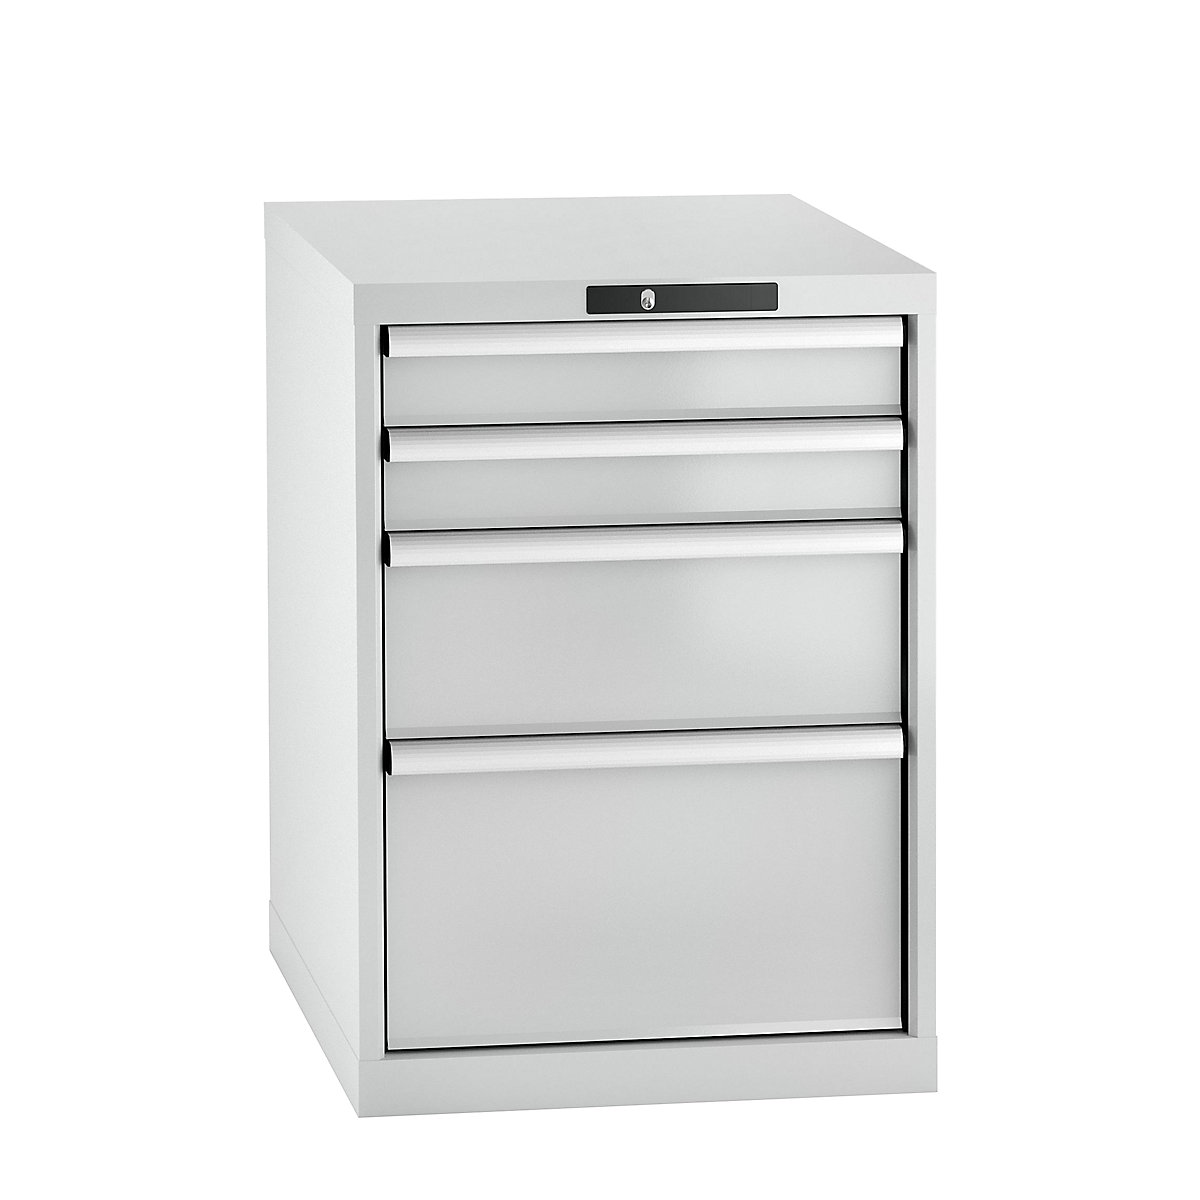 LISTA – Armoire à tiroirs en tôle d'acier, h x l 800 x 564 mm, 4 tiroirs, gris clair